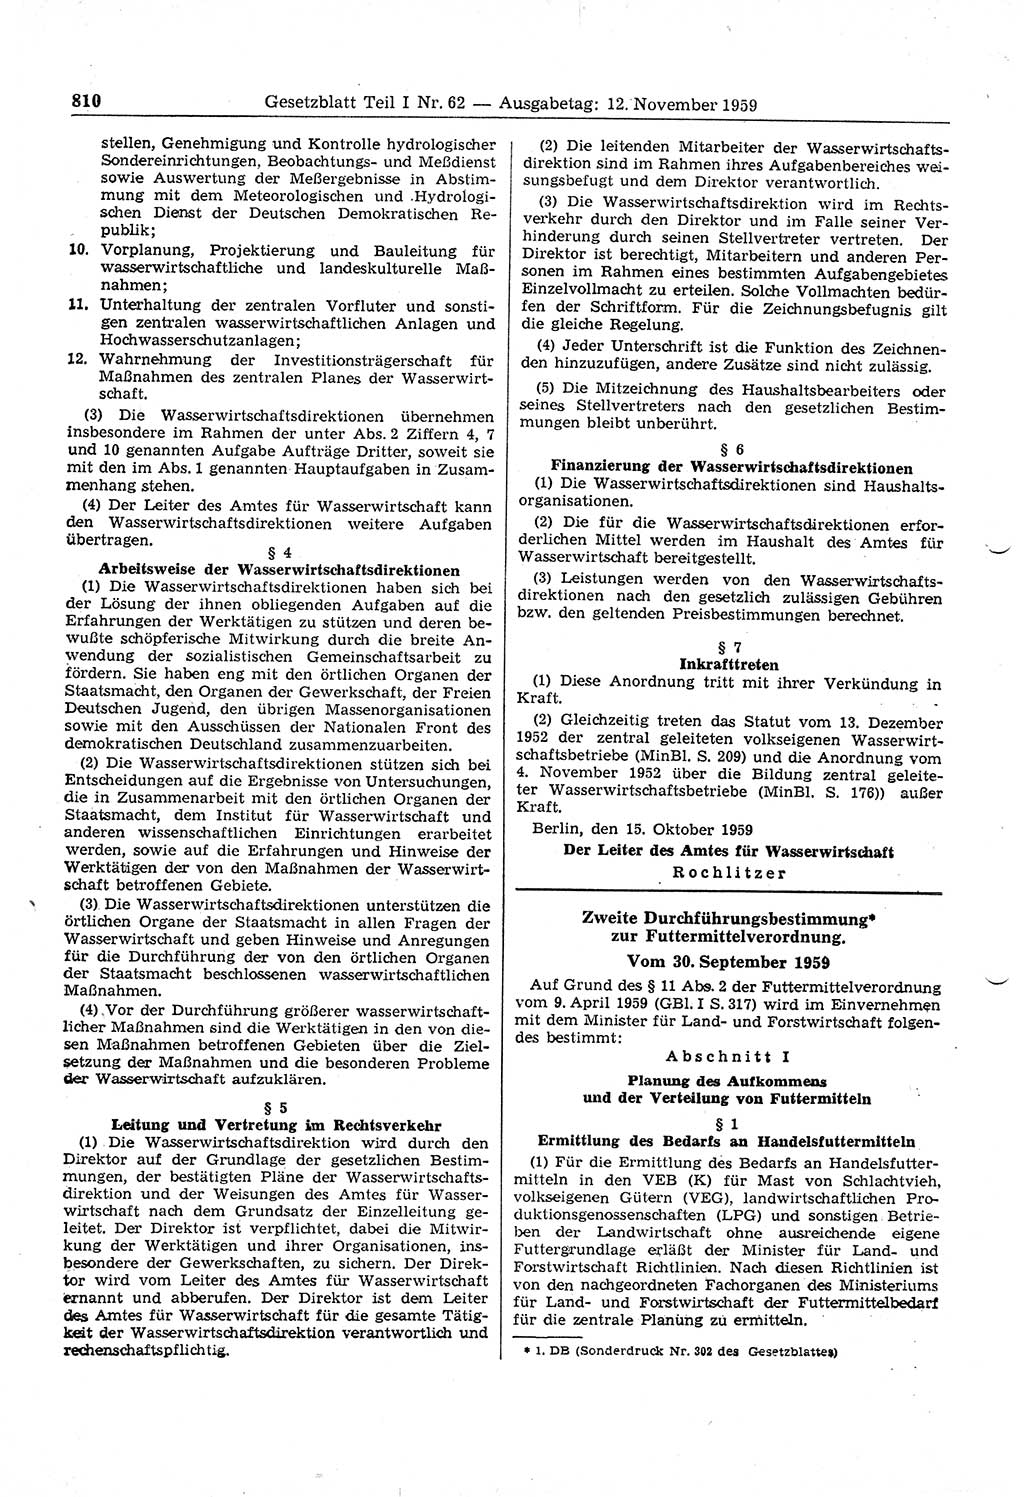 Gesetzblatt (GBl.) der Deutschen Demokratischen Republik (DDR) Teil Ⅰ 1959, Seite 810 (GBl. DDR Ⅰ 1959, S. 810)